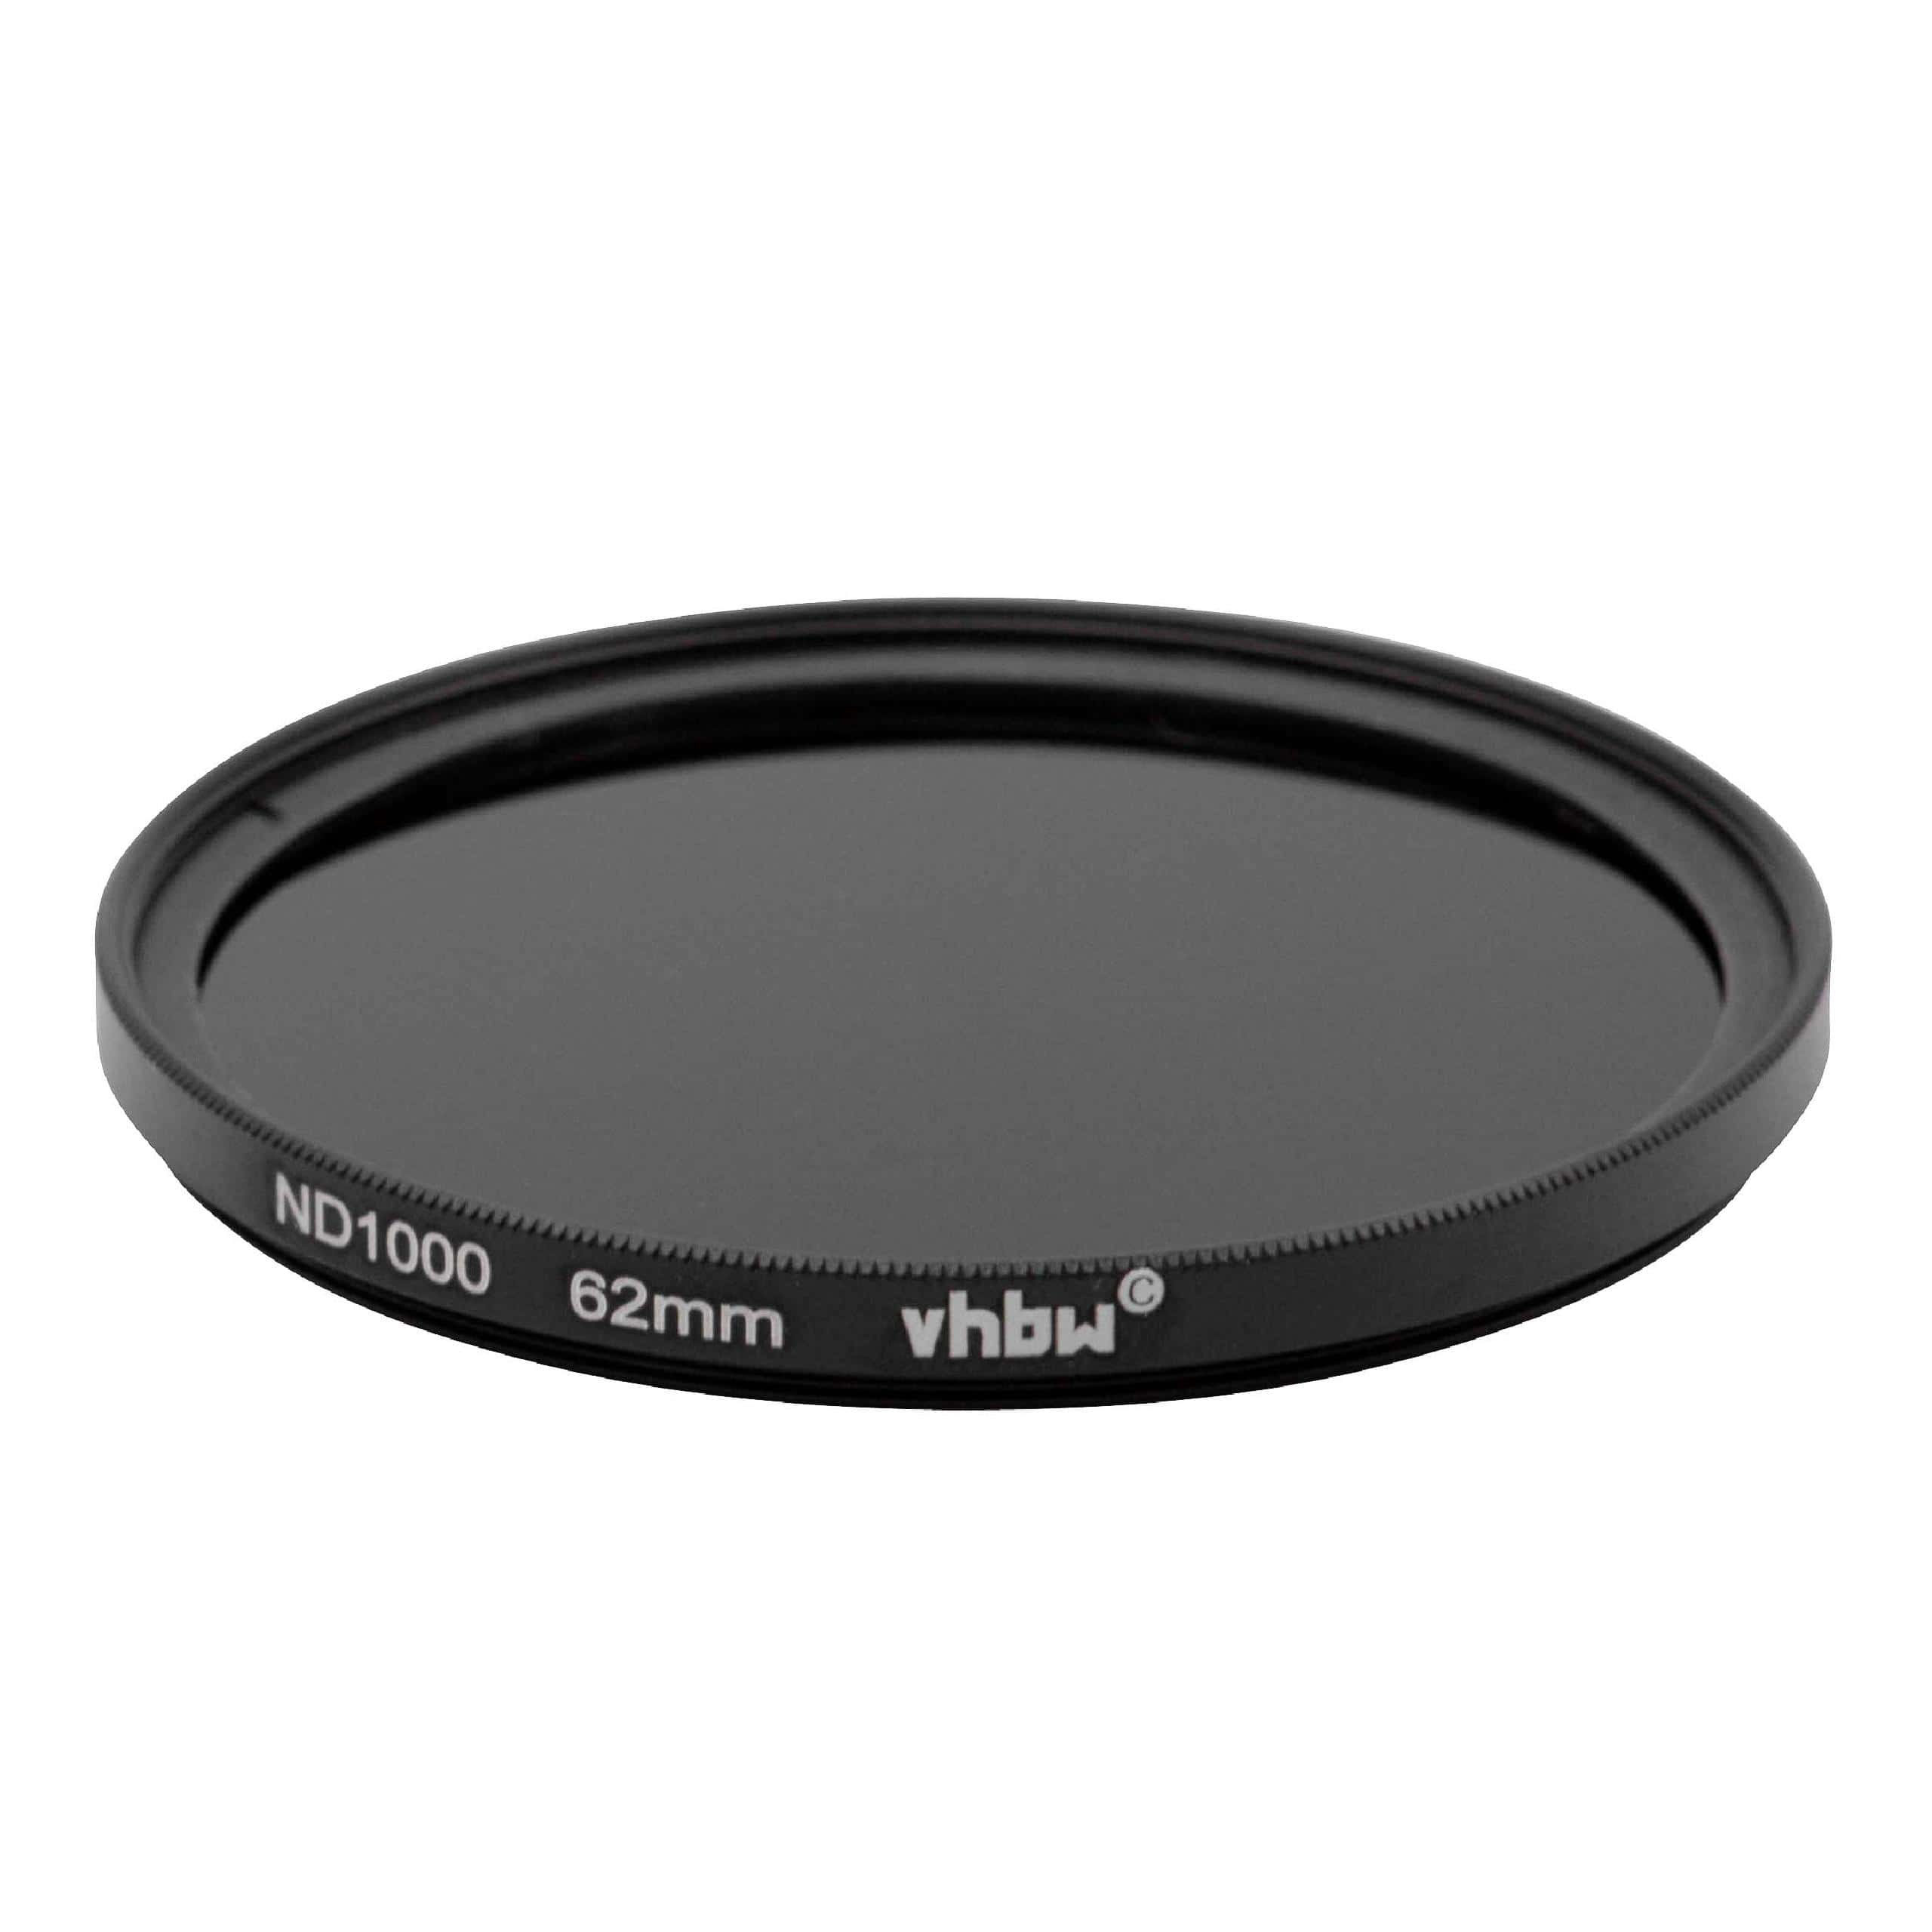 Filtre ND 1000 universel pour objectif d'appareil photo de 62 mm de diamètre – Filtre gris